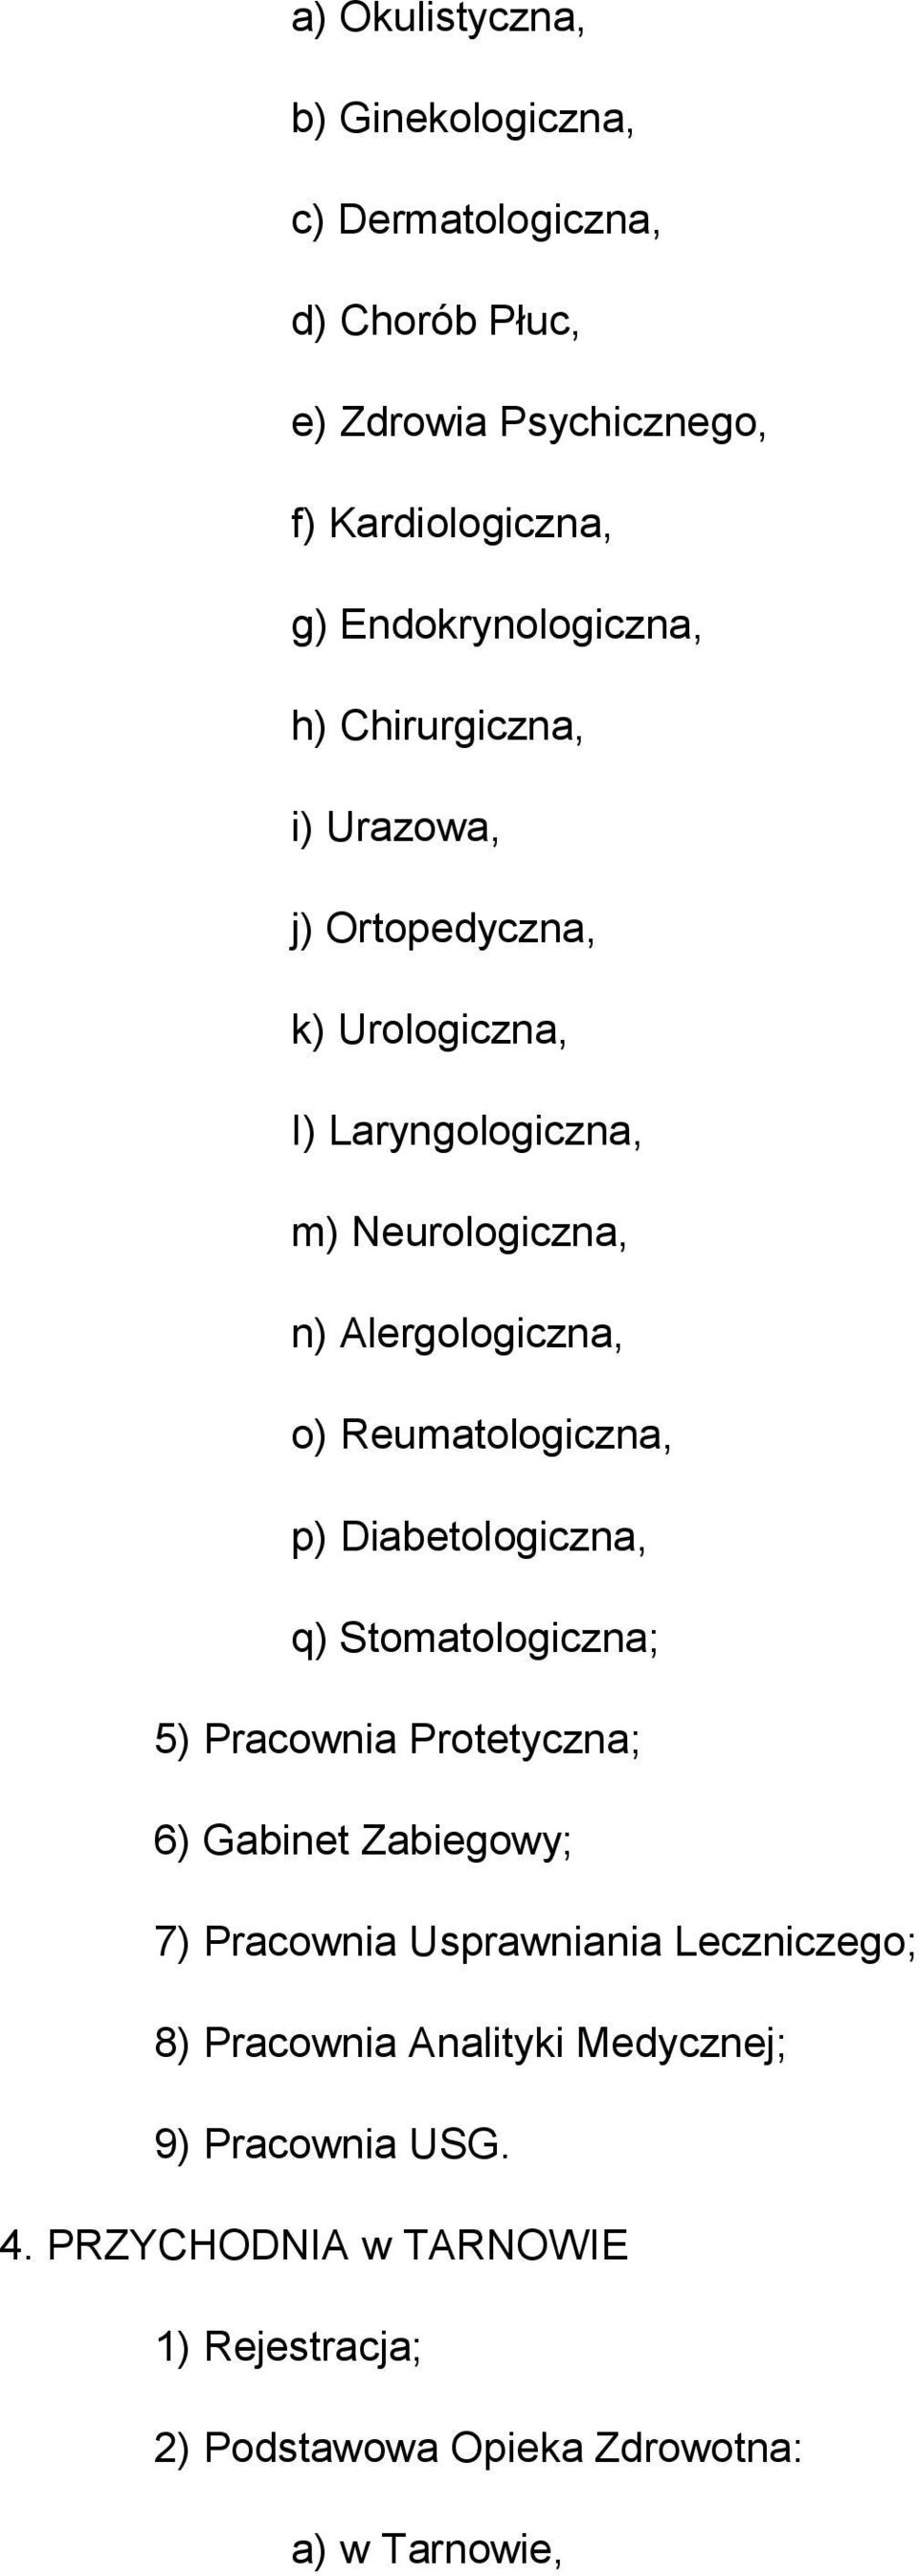 Alergologiczna, o) Reumatologiczna, p) Diabetologiczna, q) Stomatologiczna; 5) Pracownia Protetyczna; 6) Gabinet Zabiegowy; 7)